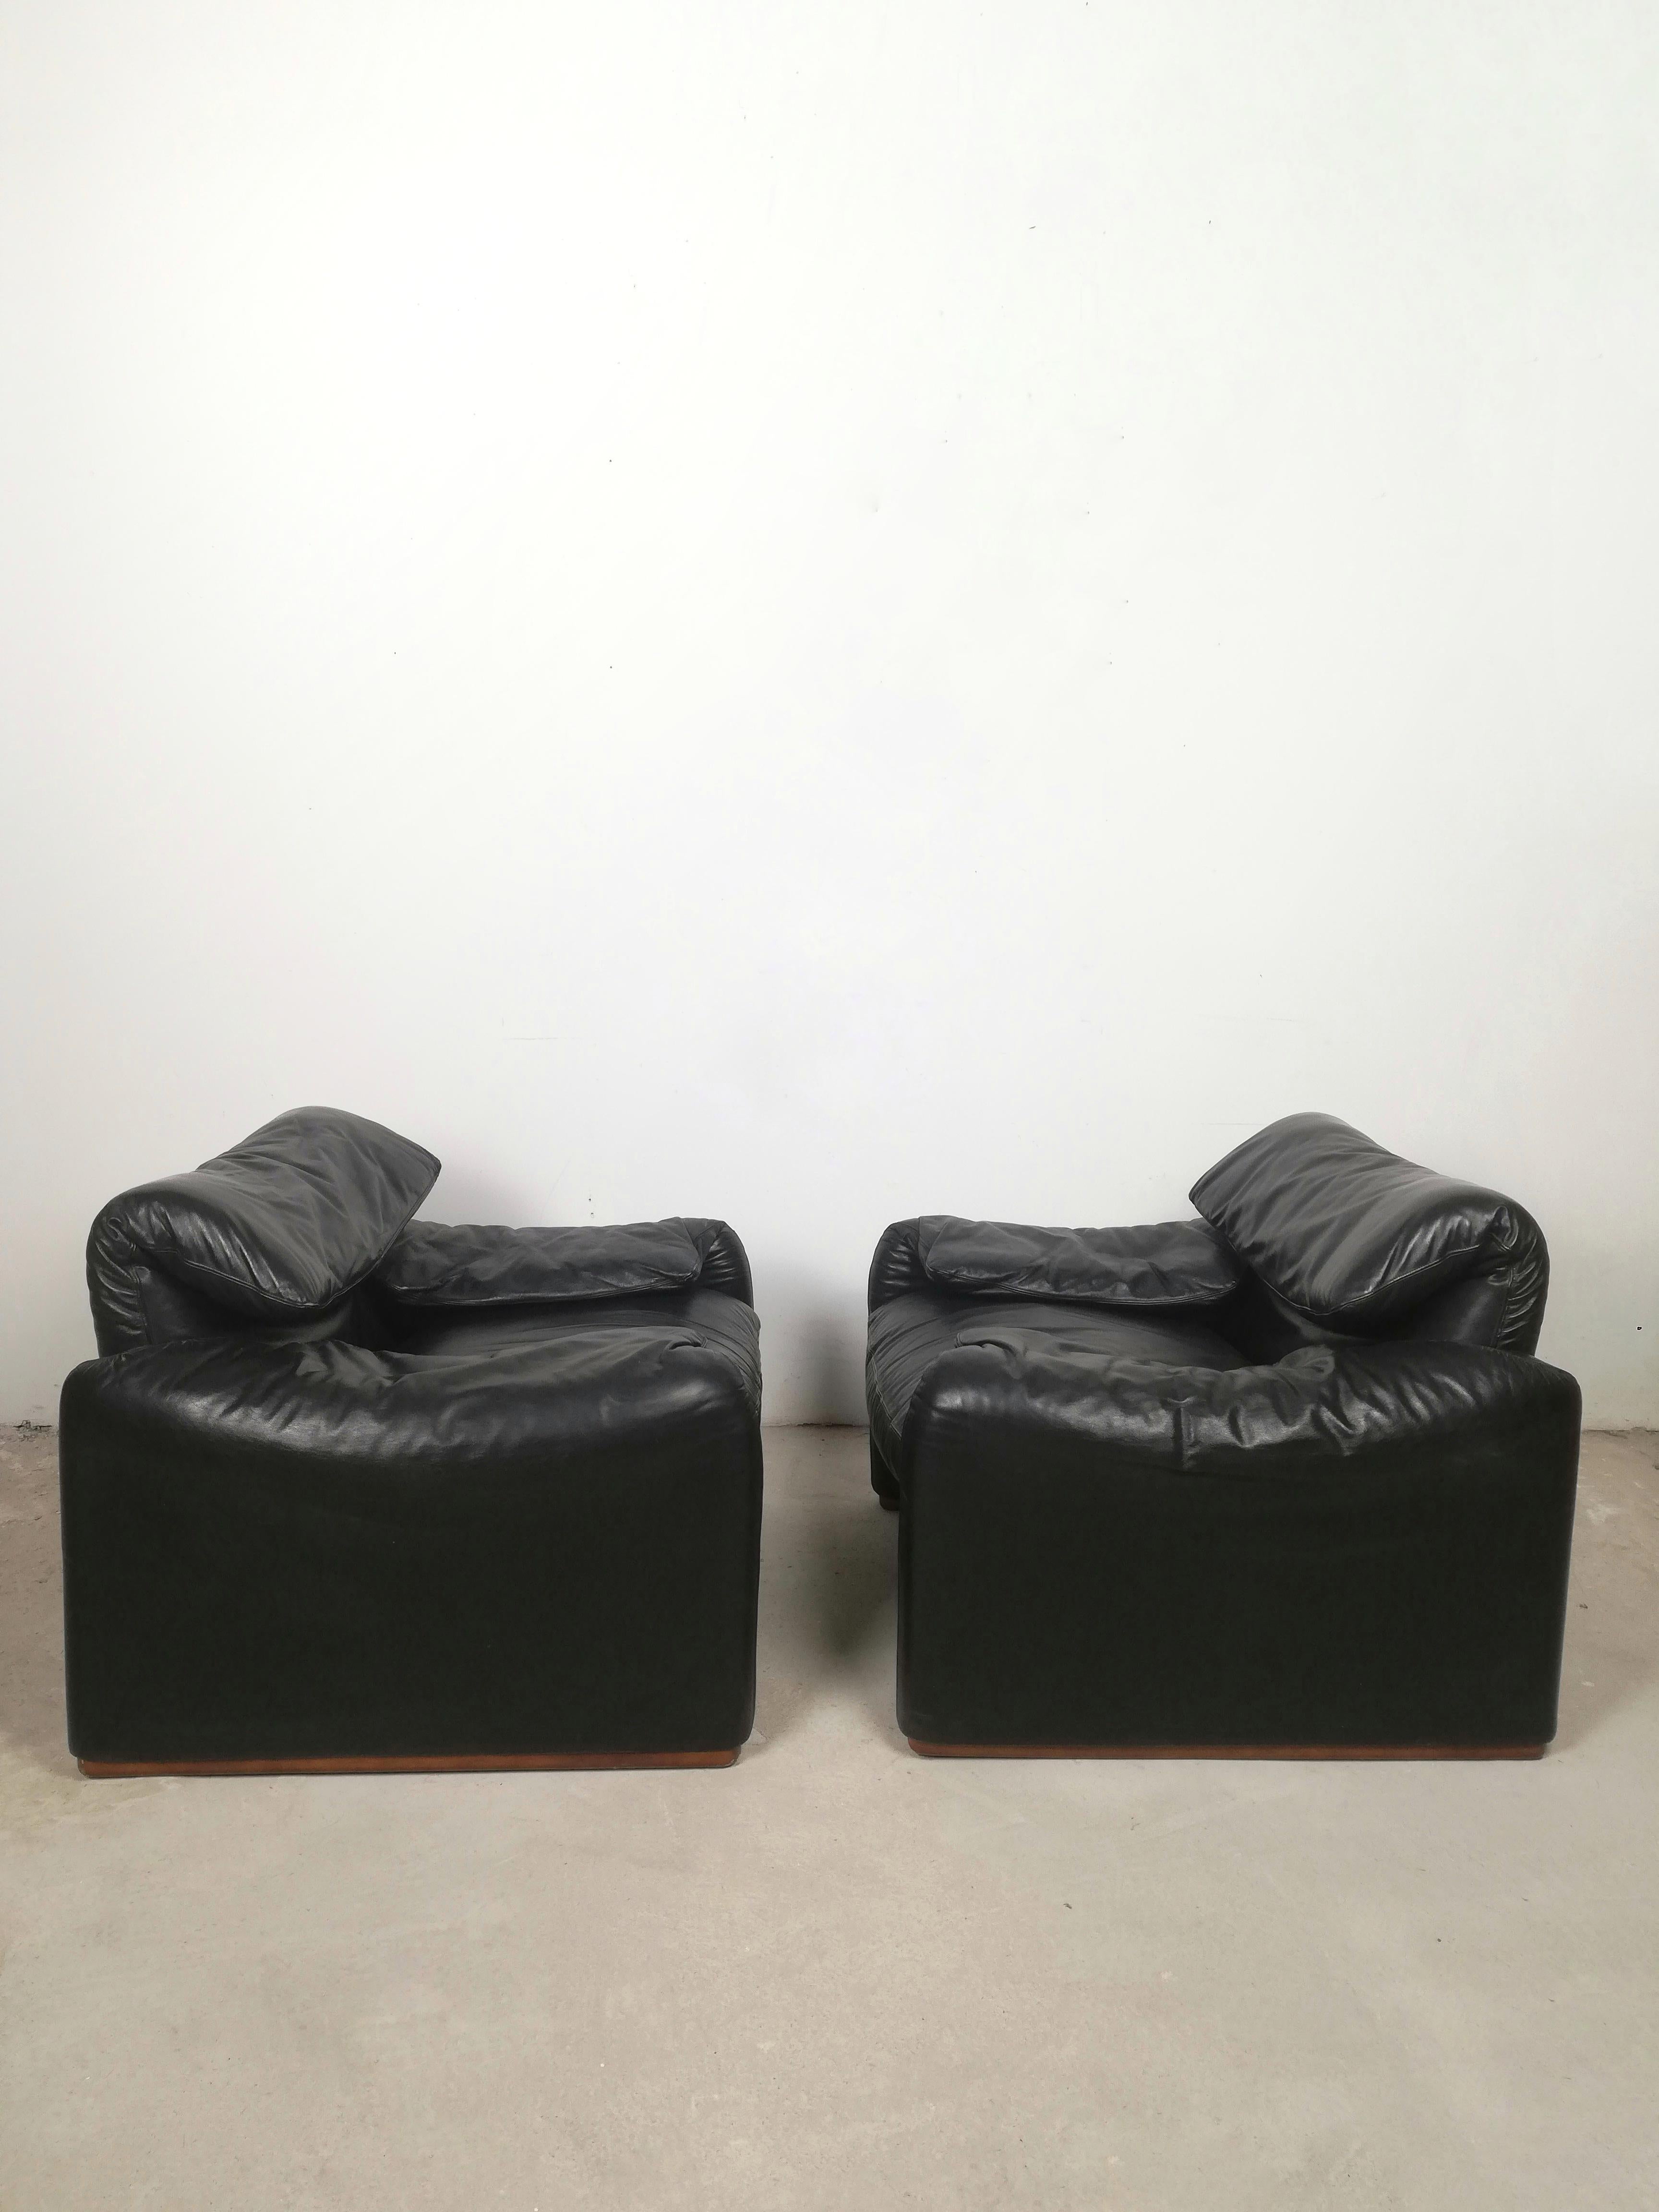 Set aus zwei Maralunga-Sesseln im Vintage-Stil mit schwarzem Lederbezug.
Diese ikonischen Serien wurden 1973 mit dem Compasso d'Oro ausgezeichnet und sind noch heute Teil der ständigen Sammlung des MOMA.
Die Serie Maralunga kombiniert die 